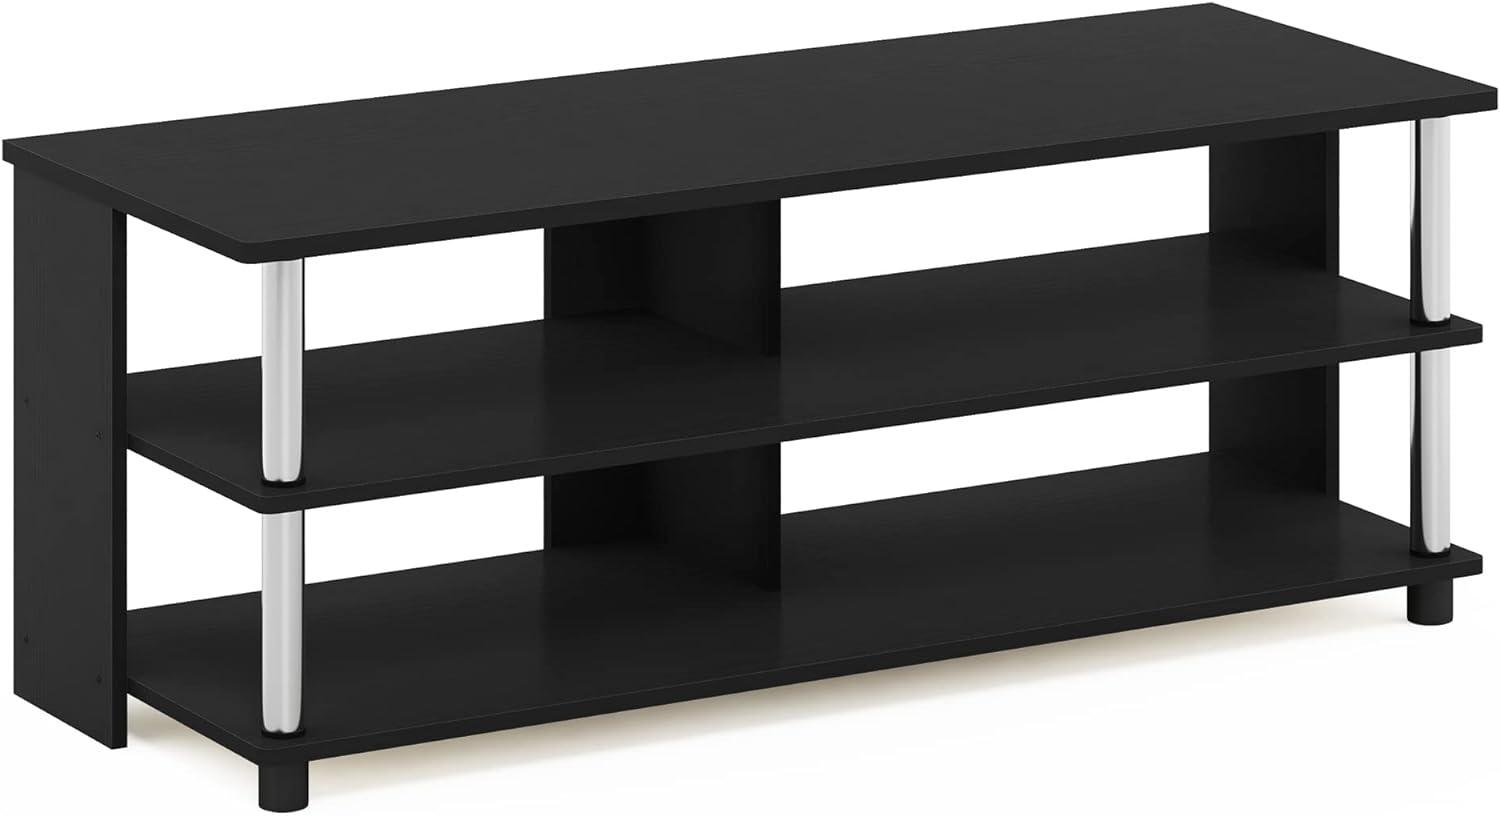 Furinno Sully 3-Stufe TV-Ständer für TV bis 48, Americano, 104. 4 (Breite) x 40. 1 (Höhe) x 39. 4 (Tiefe) cm Bild 1